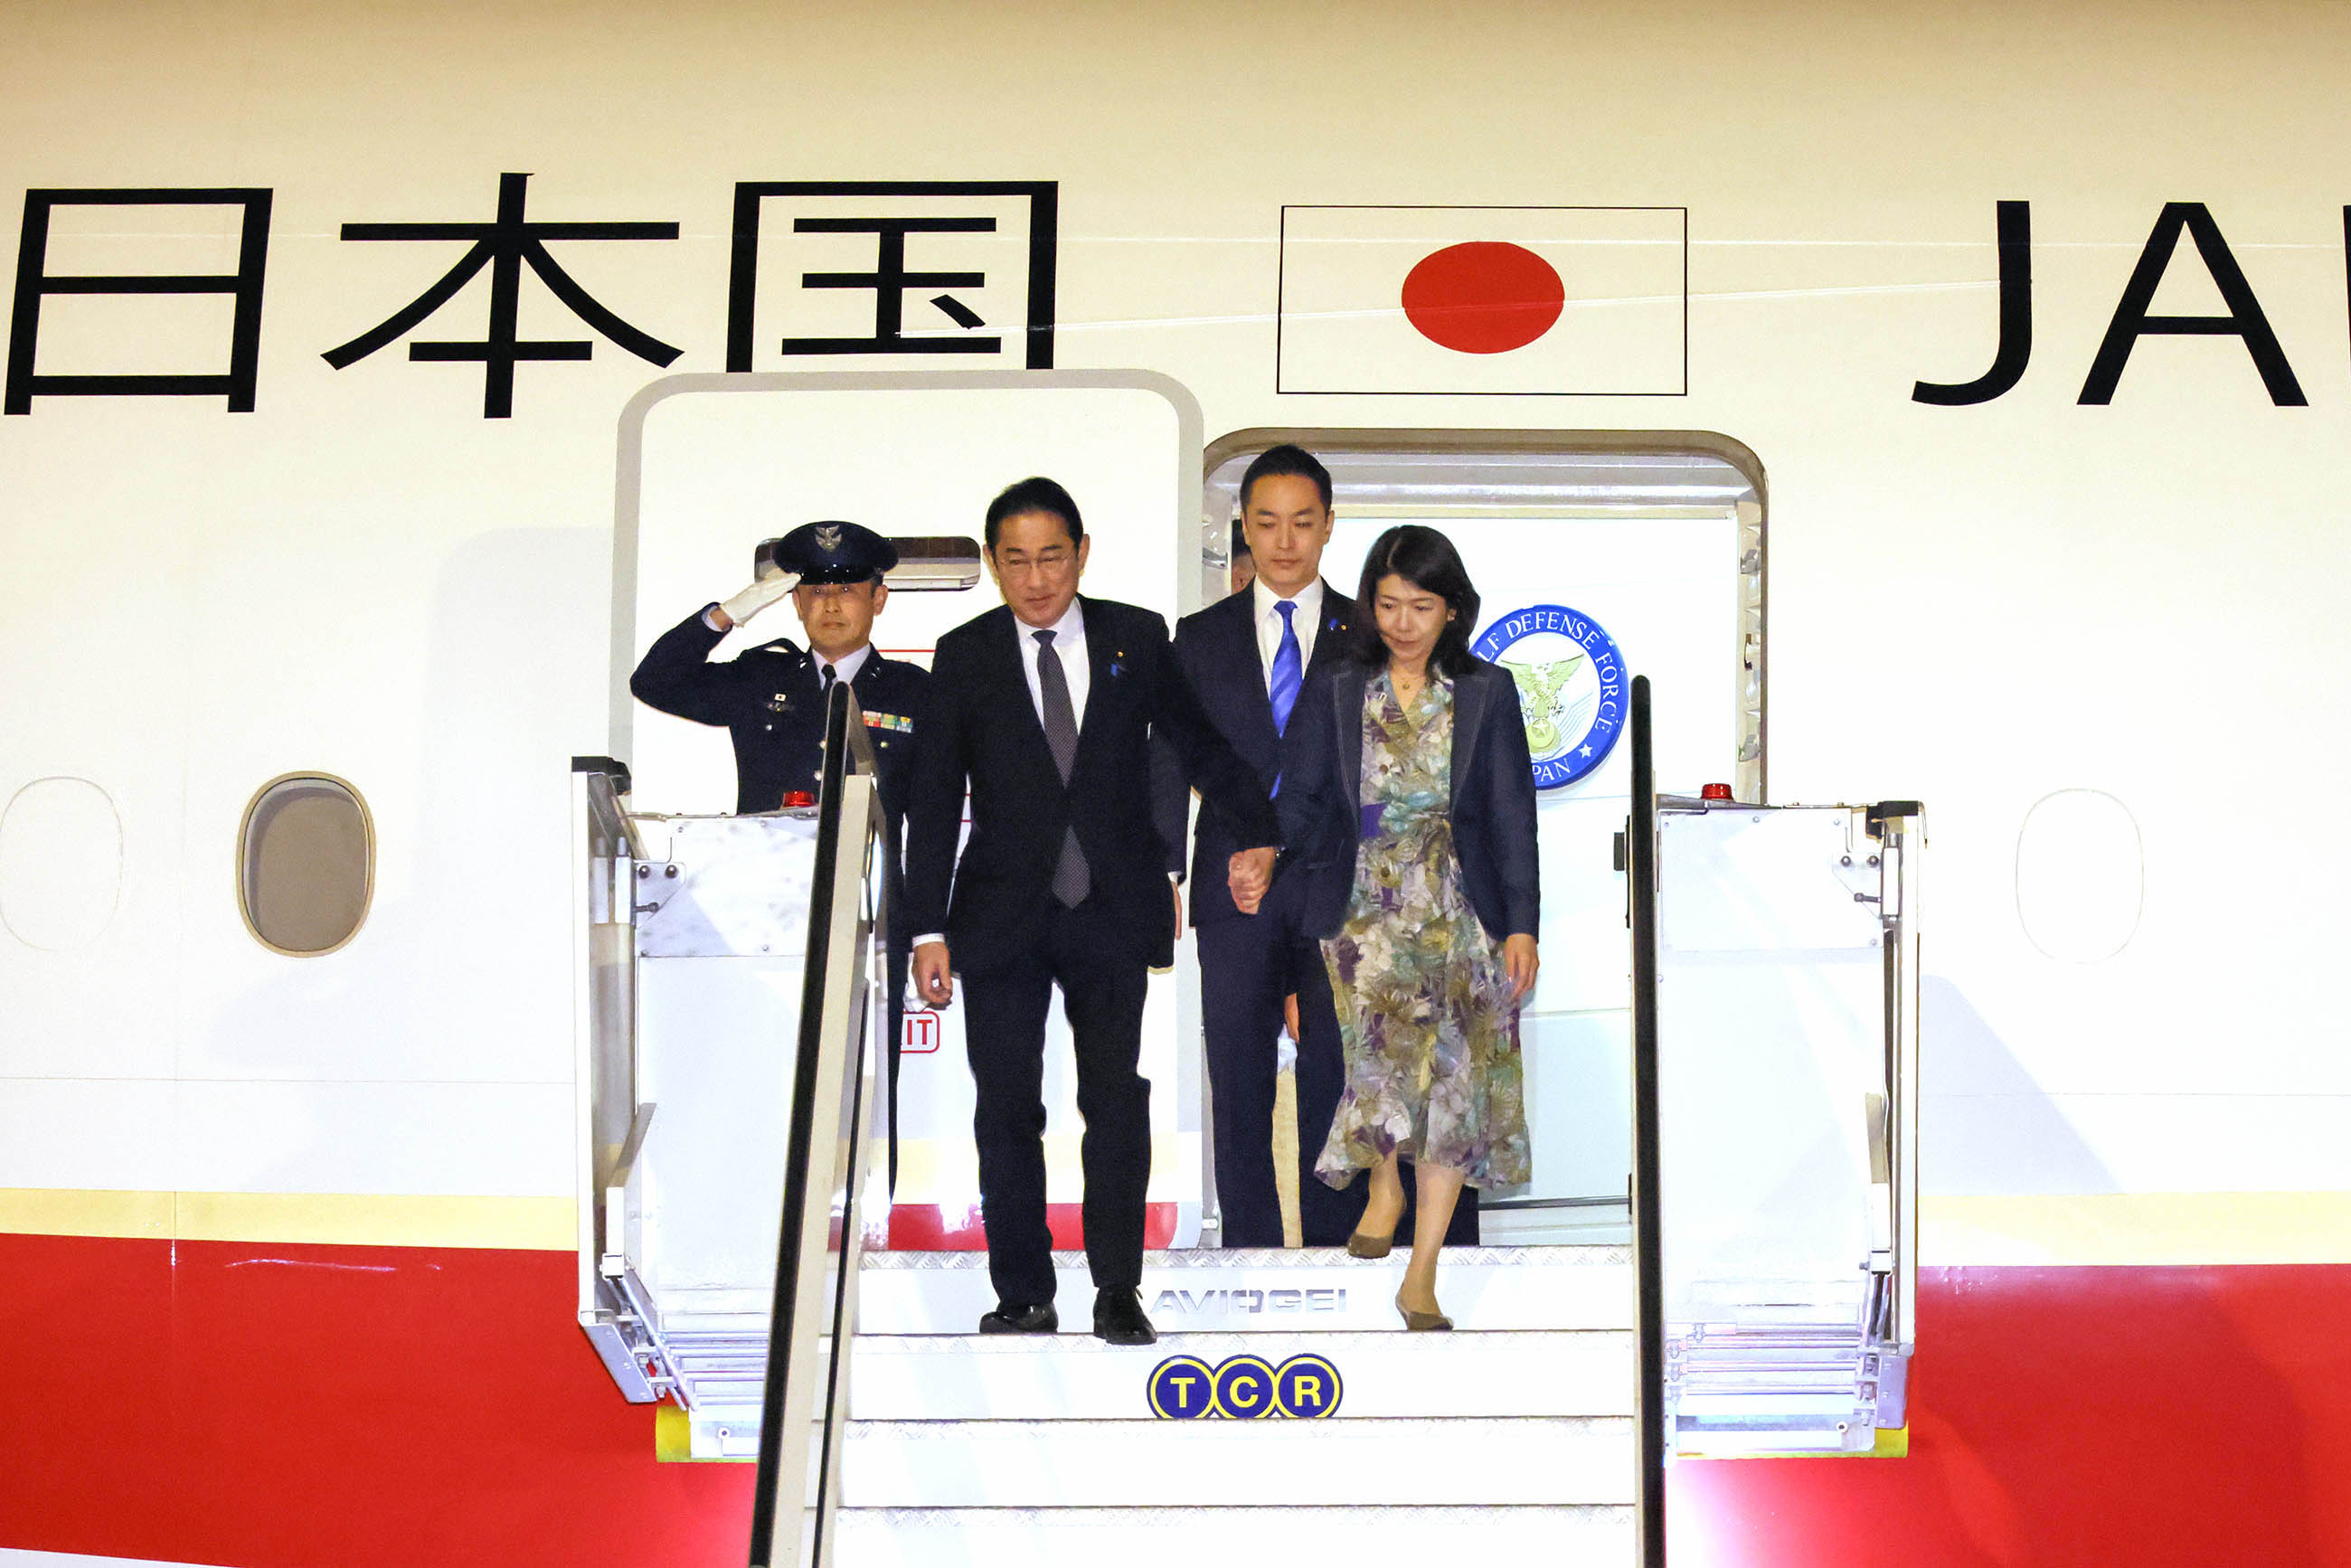 Prime Minister Kishida arriving in Italy (1) 